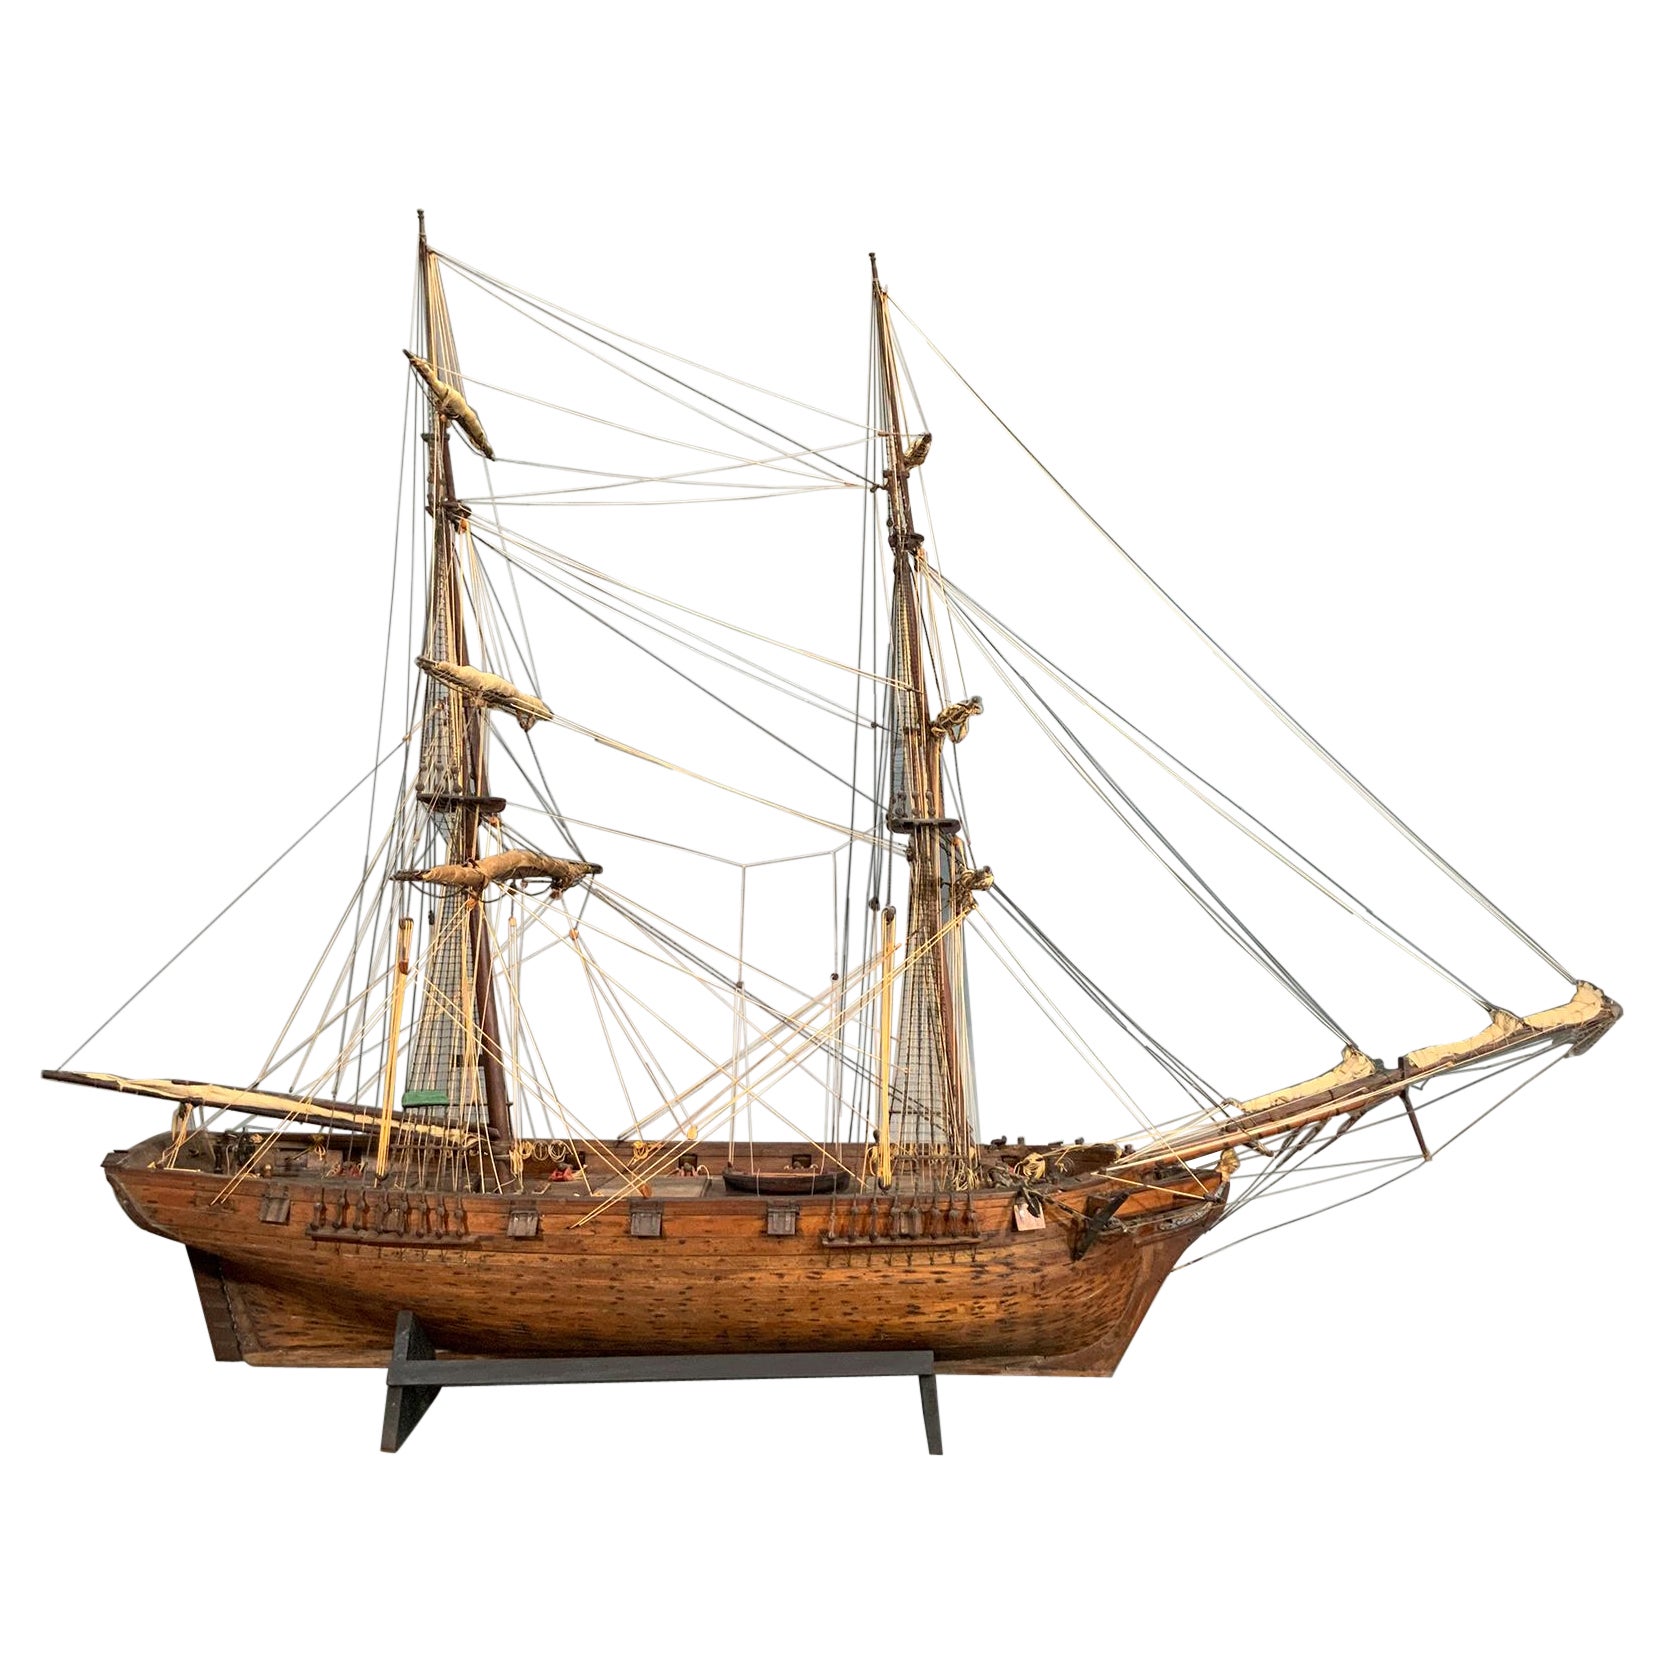 Modèle de bateau historique de la collection DeCoppet